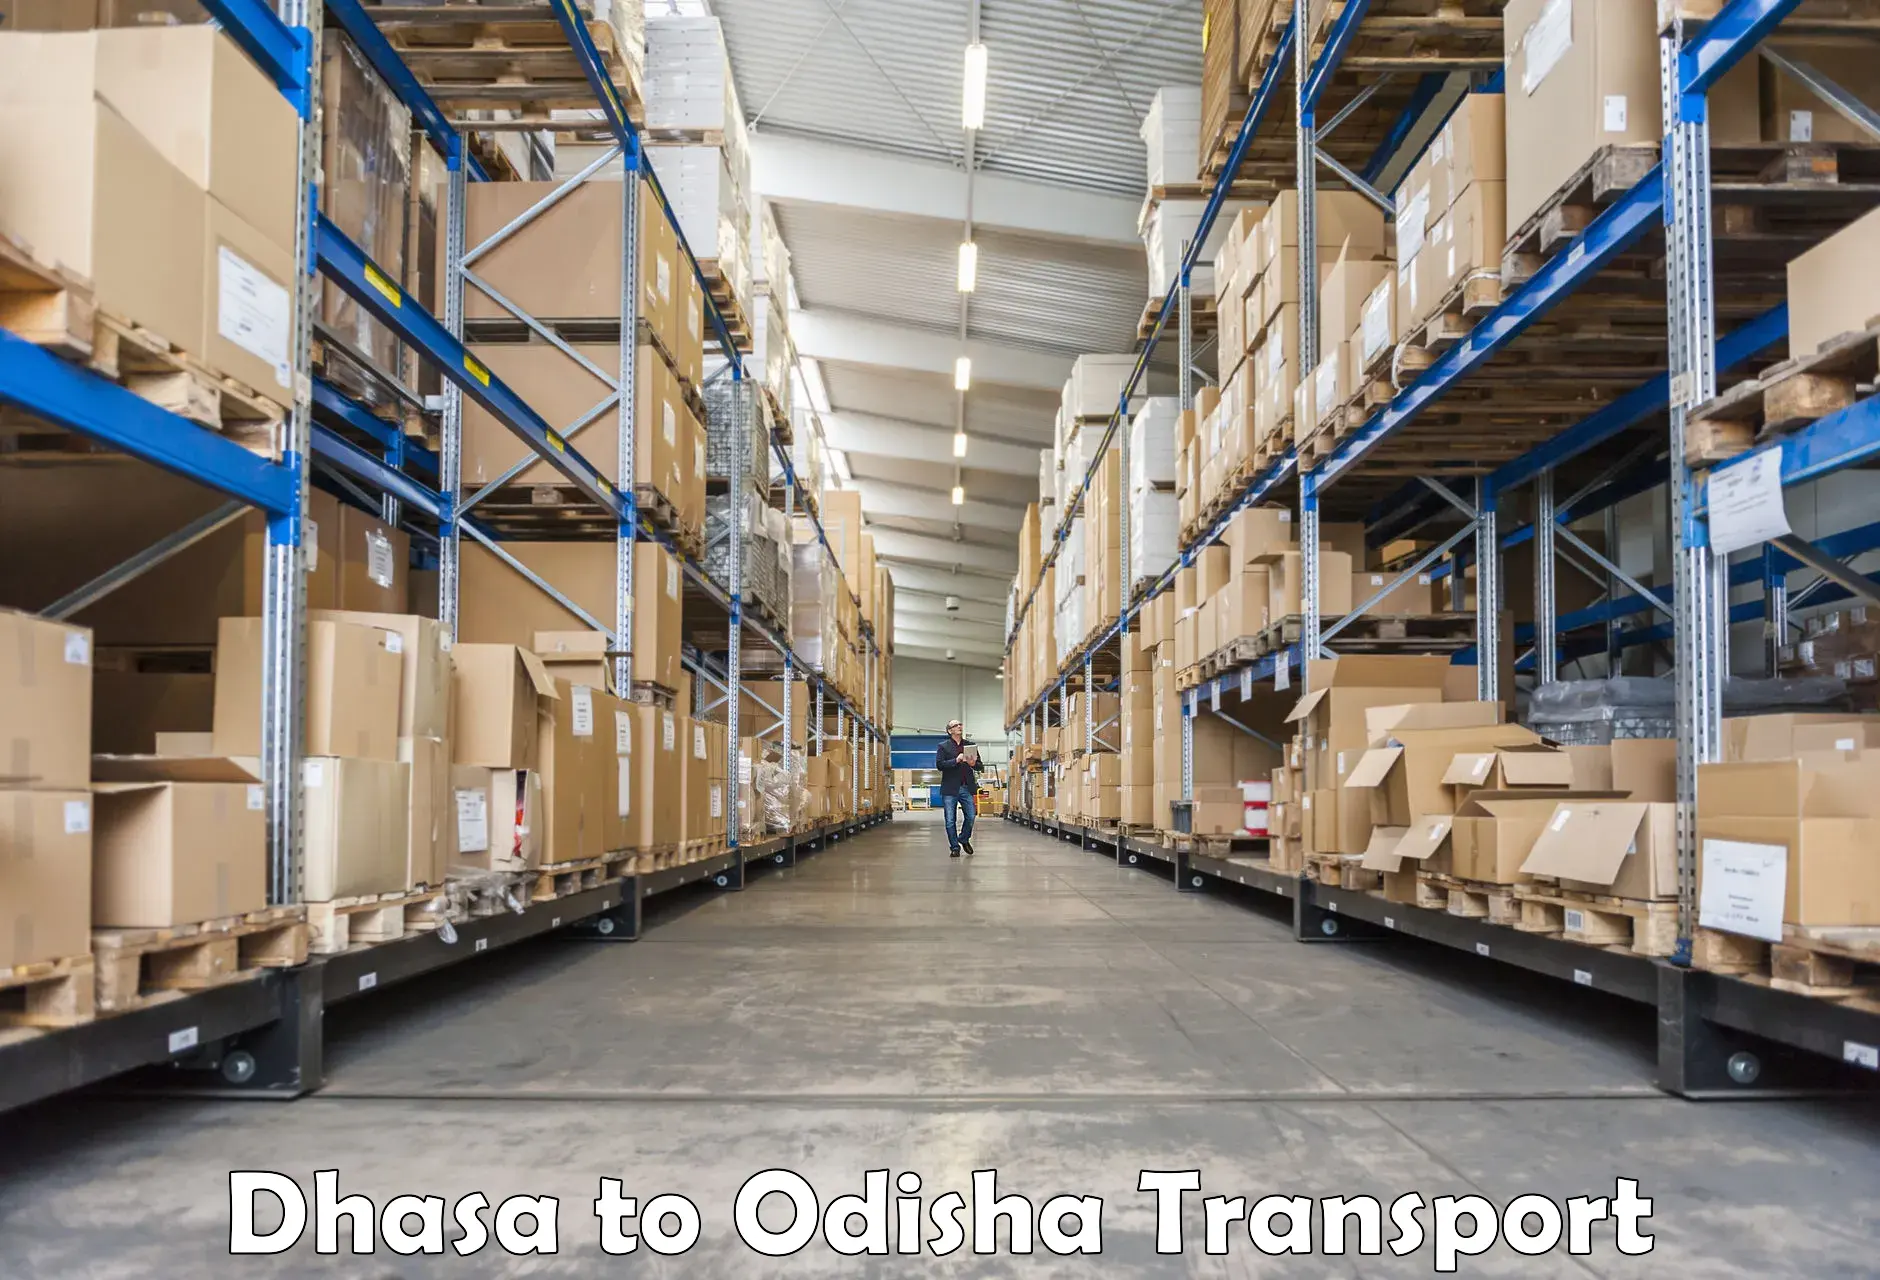 Interstate goods transport Dhasa to Dukura